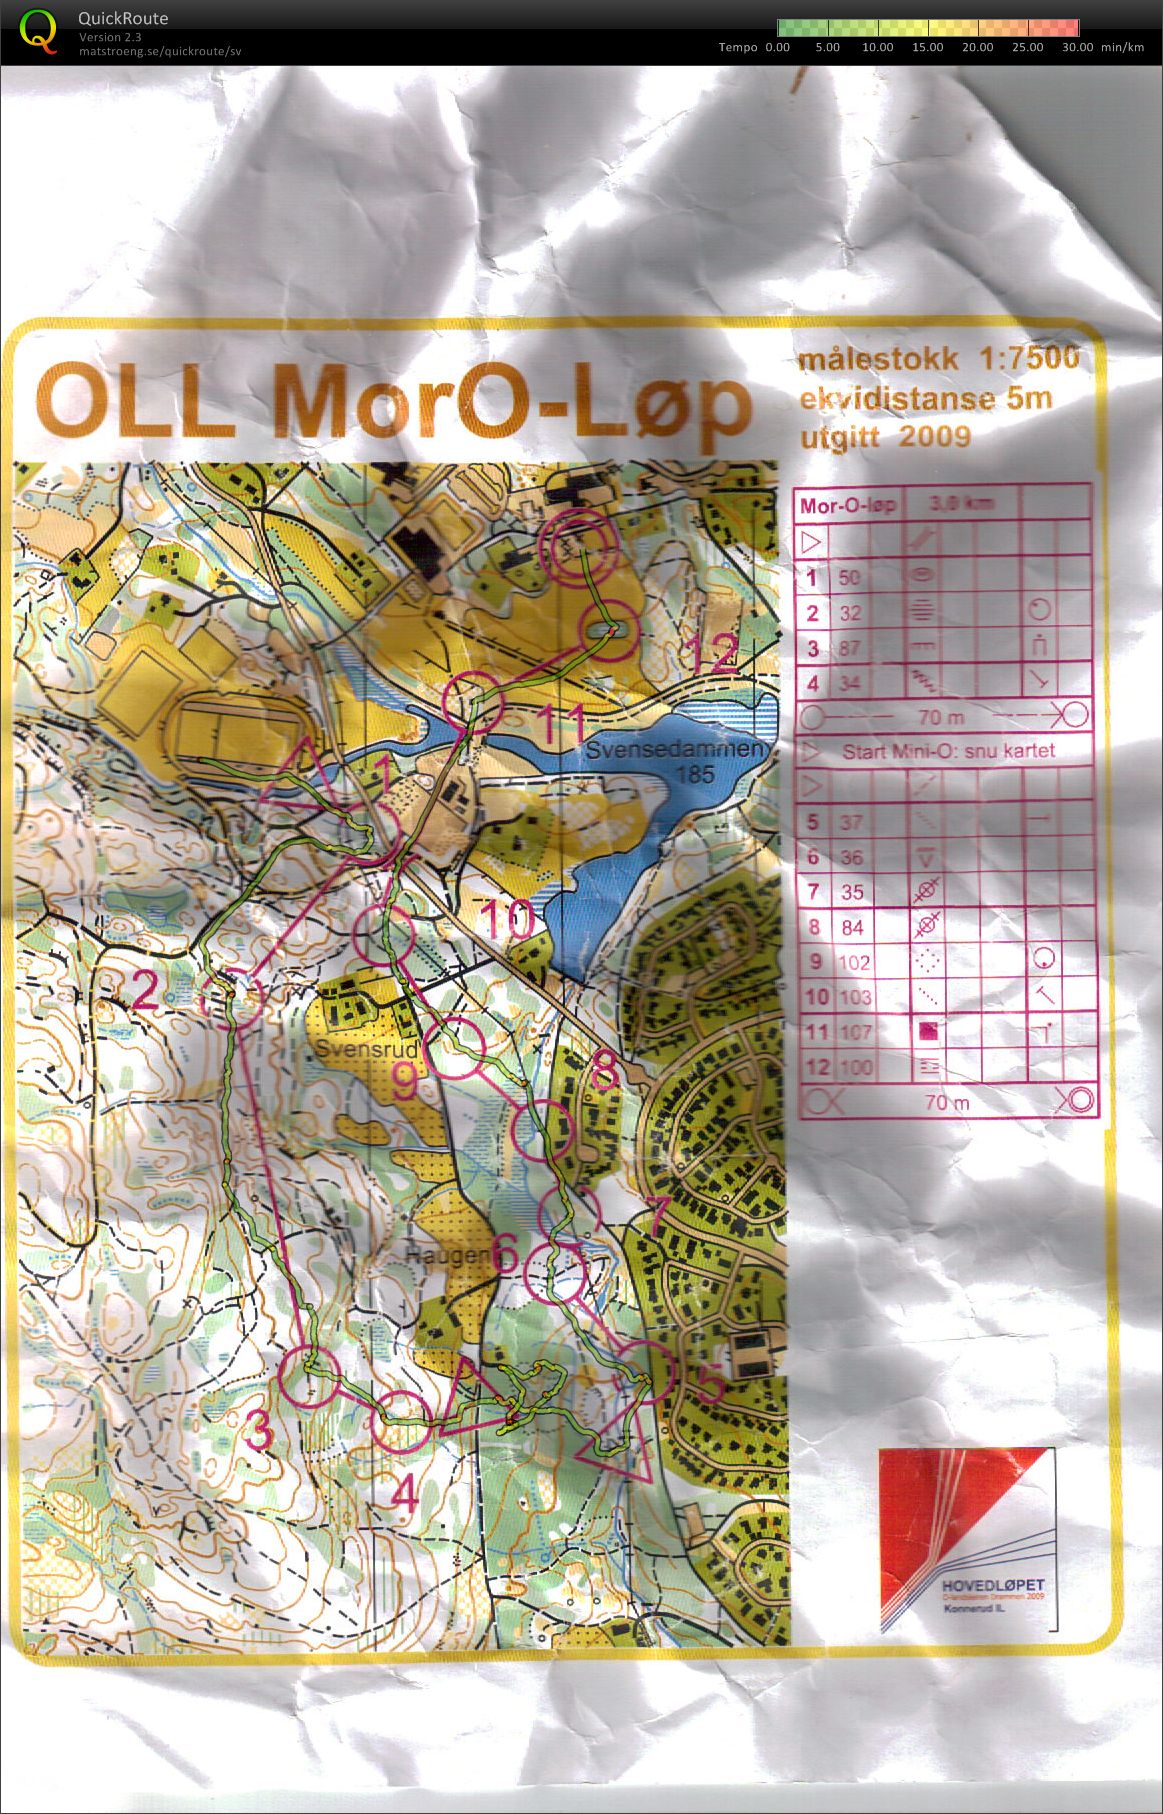 OLL MorO-løp  (2009-08-11)